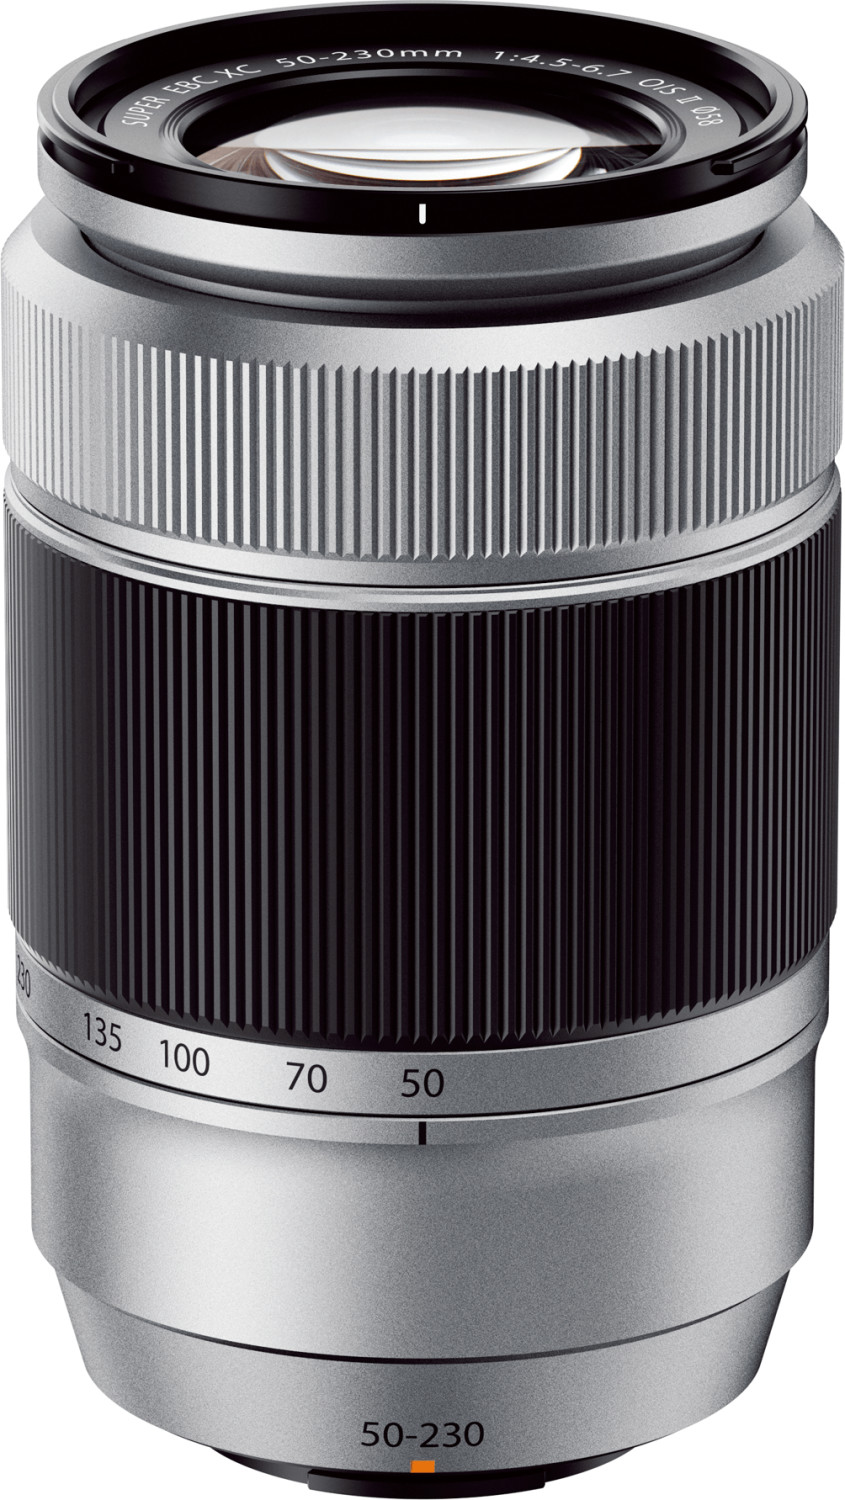 Fujifilm FUJINON XC 50-230mm f/4.5-6.7 OIS II